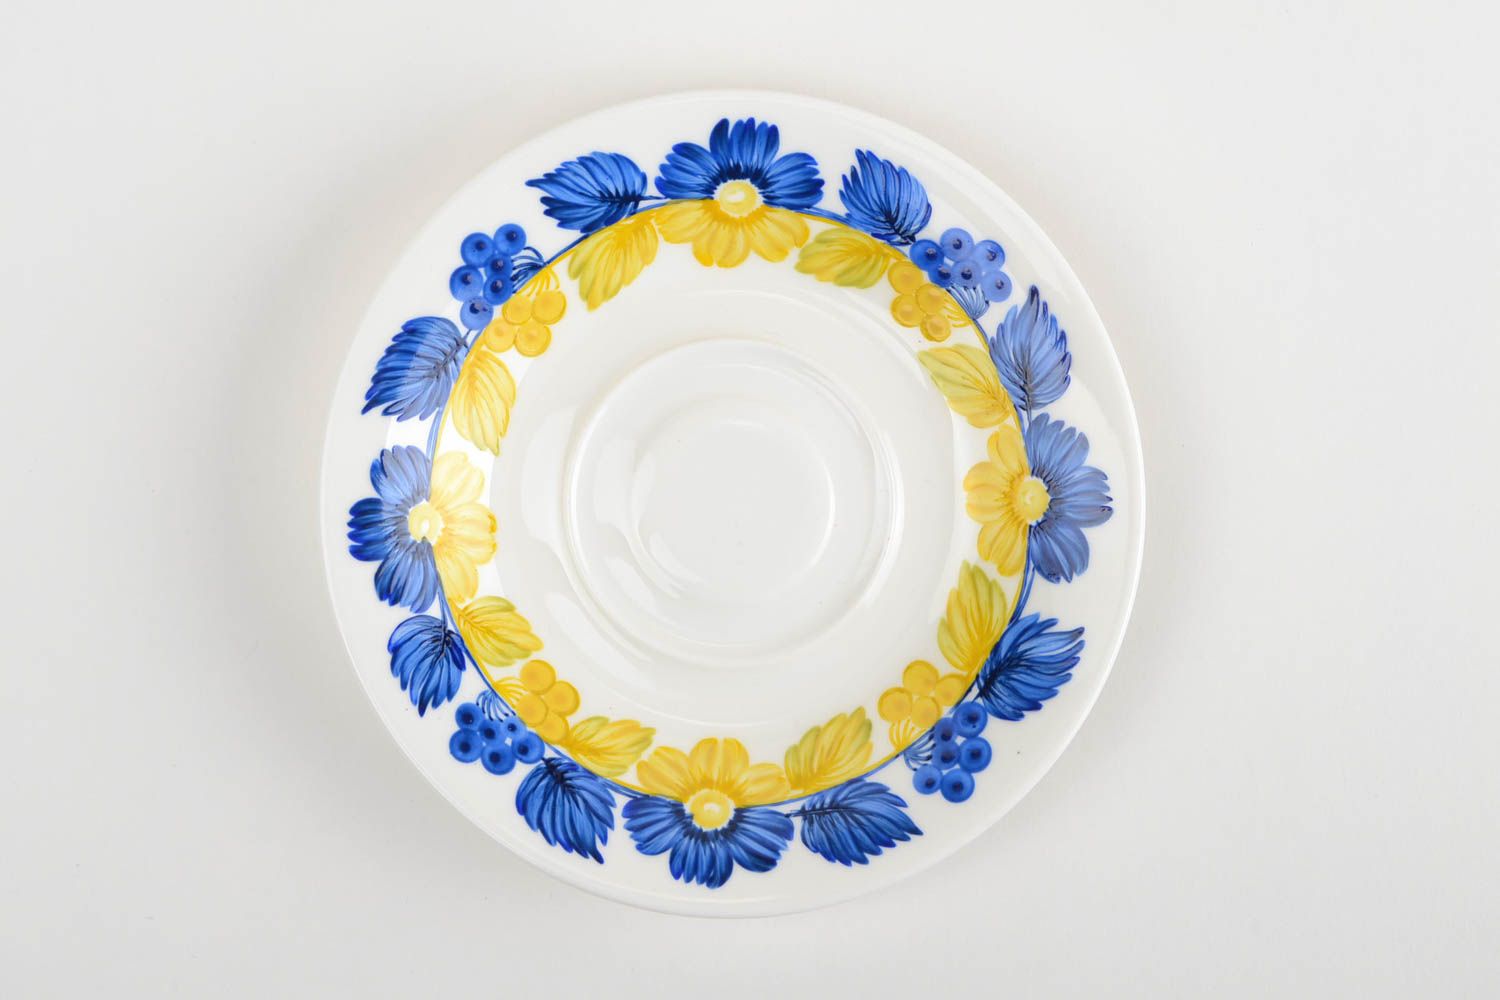 Soucoupe porcelaine fait main Petite assiette Service vaisselle ronde bleu jaune photo 3